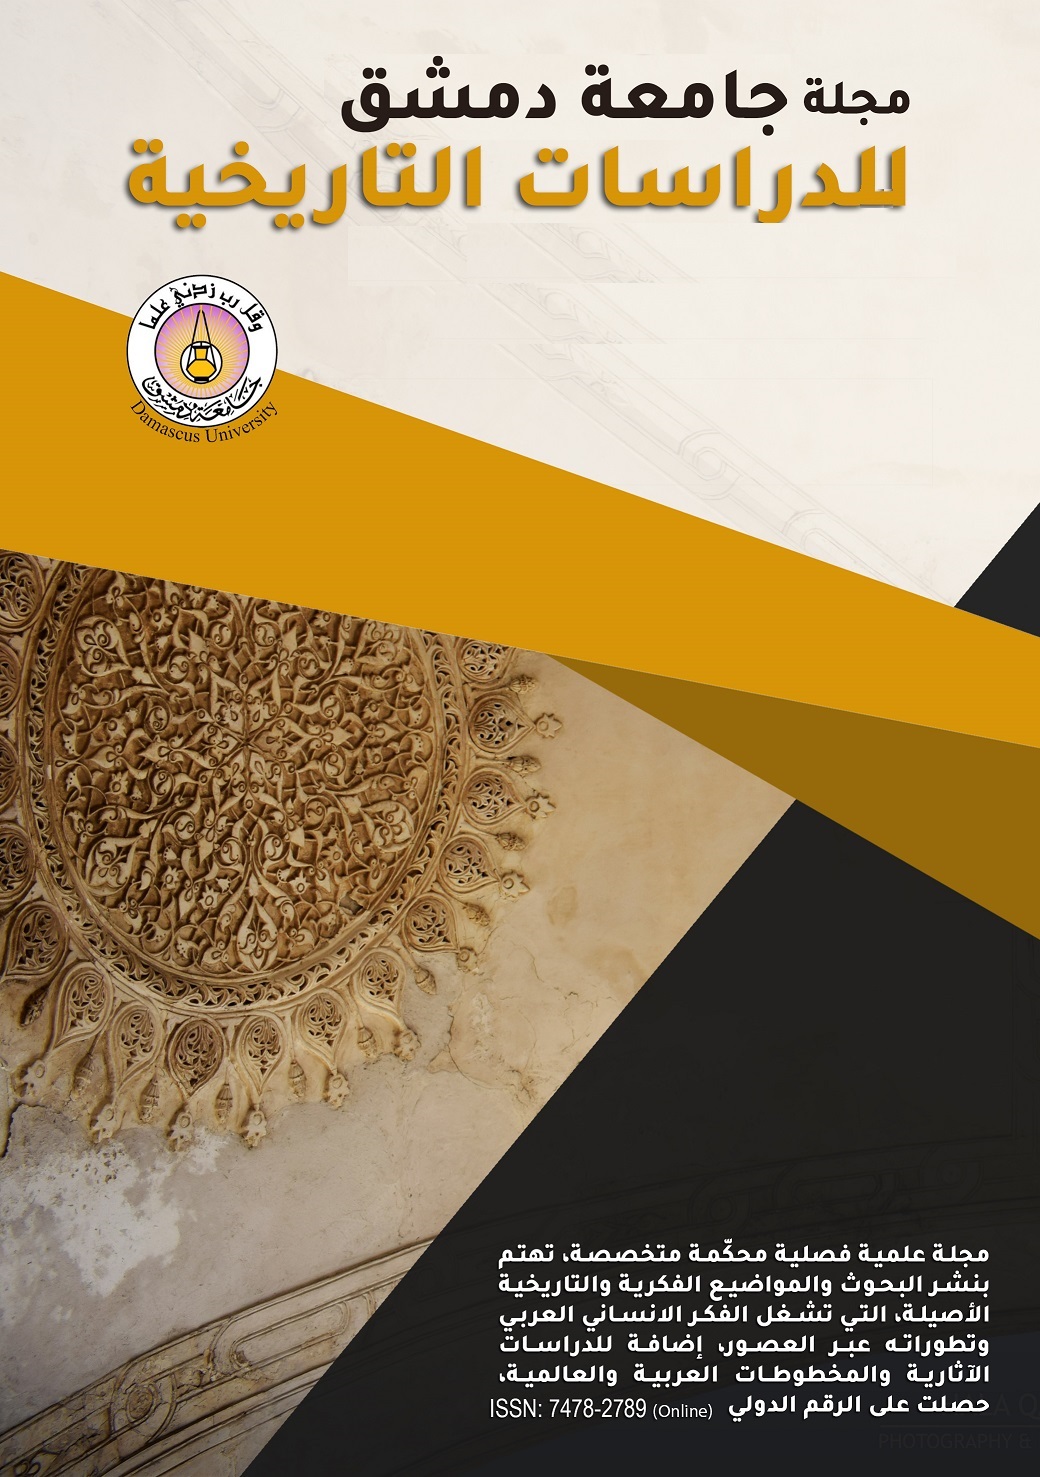 					معاينة مجلد 142 عدد 2 (2022): مجلة جامعة دمشق للدراسات التاريخية
				